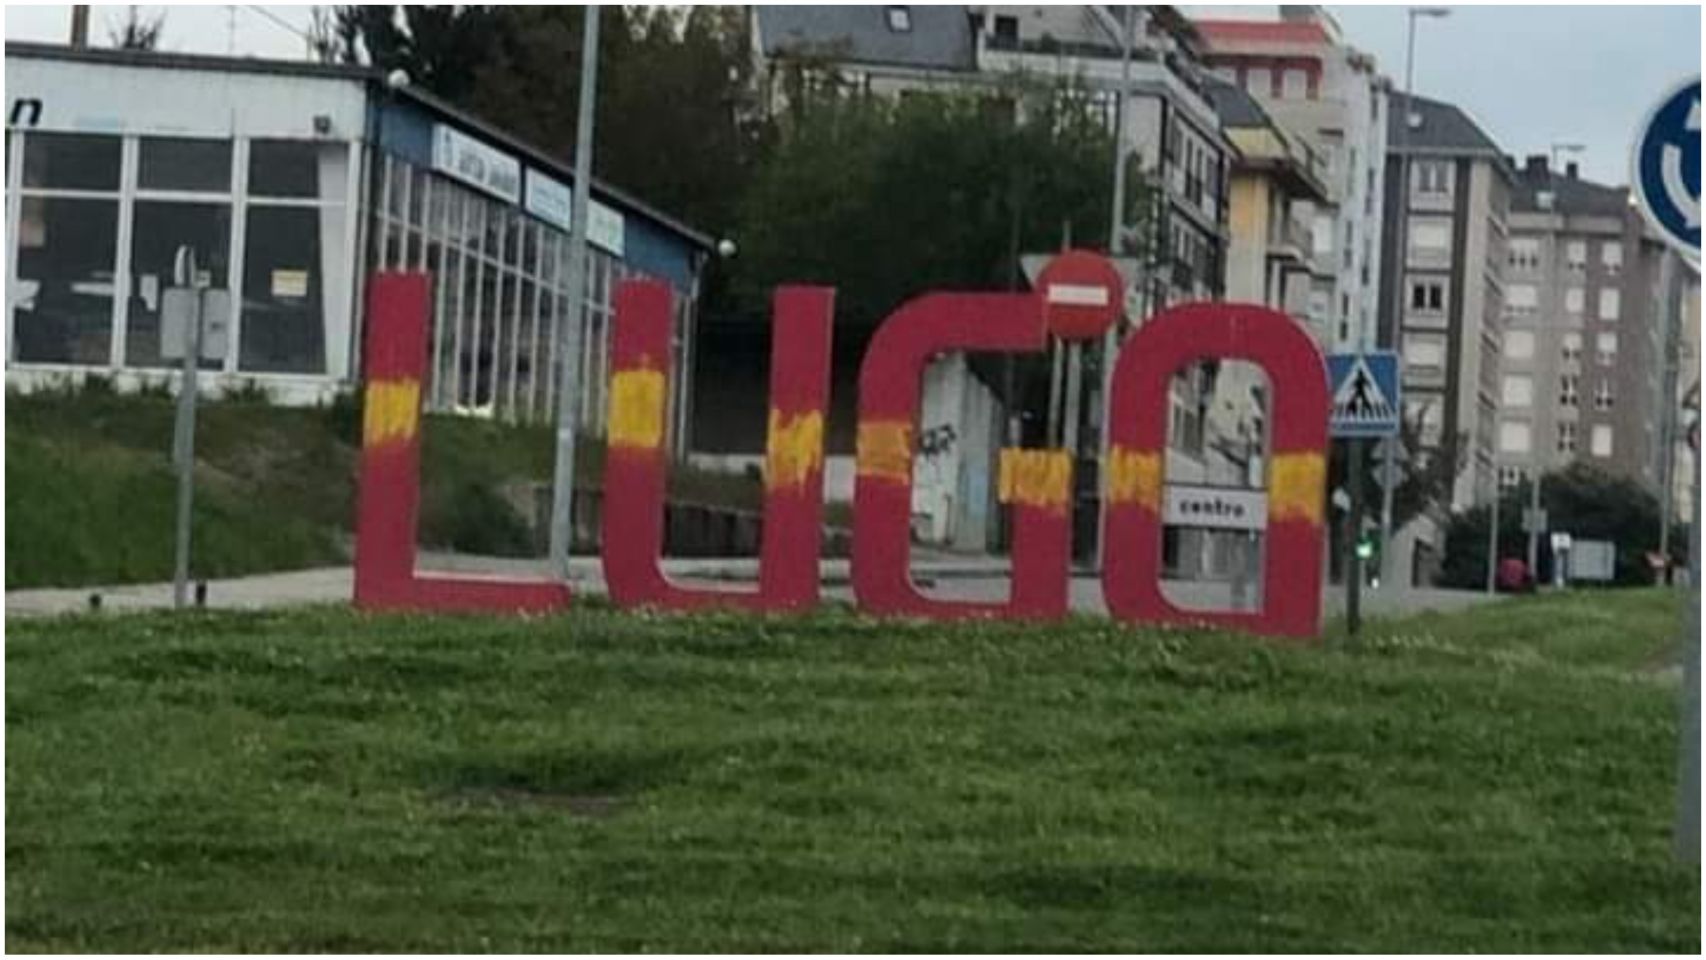 Letras de entrada a Lugo con pintadas.